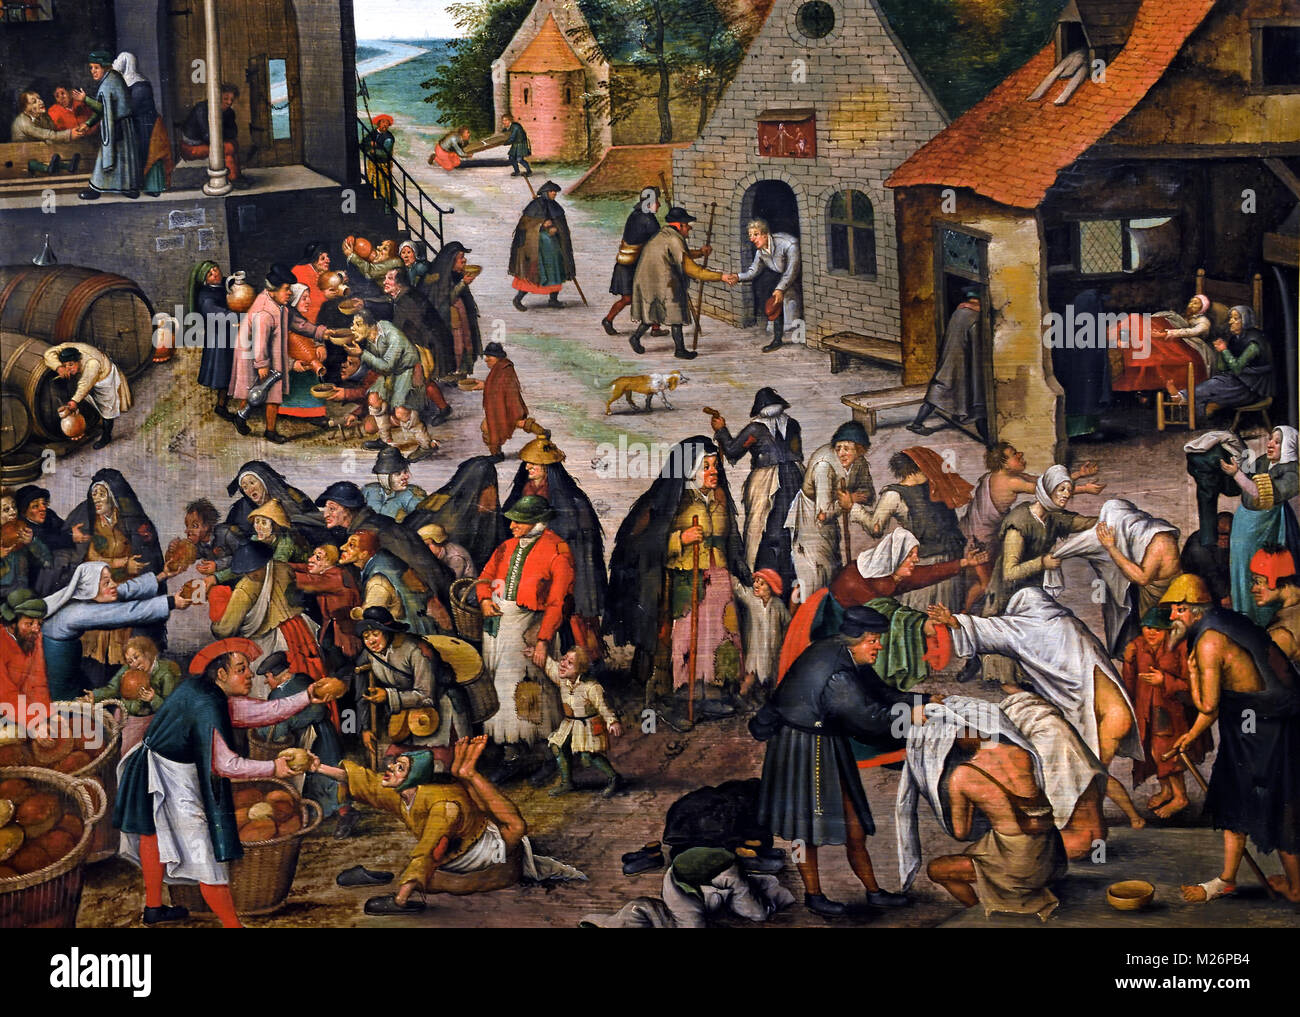 Oeuvres de miséricorde 1600-1650 Pieter Brueghel le Jeune Belge Flamand 1564-1637 Belgique Banque D'Images